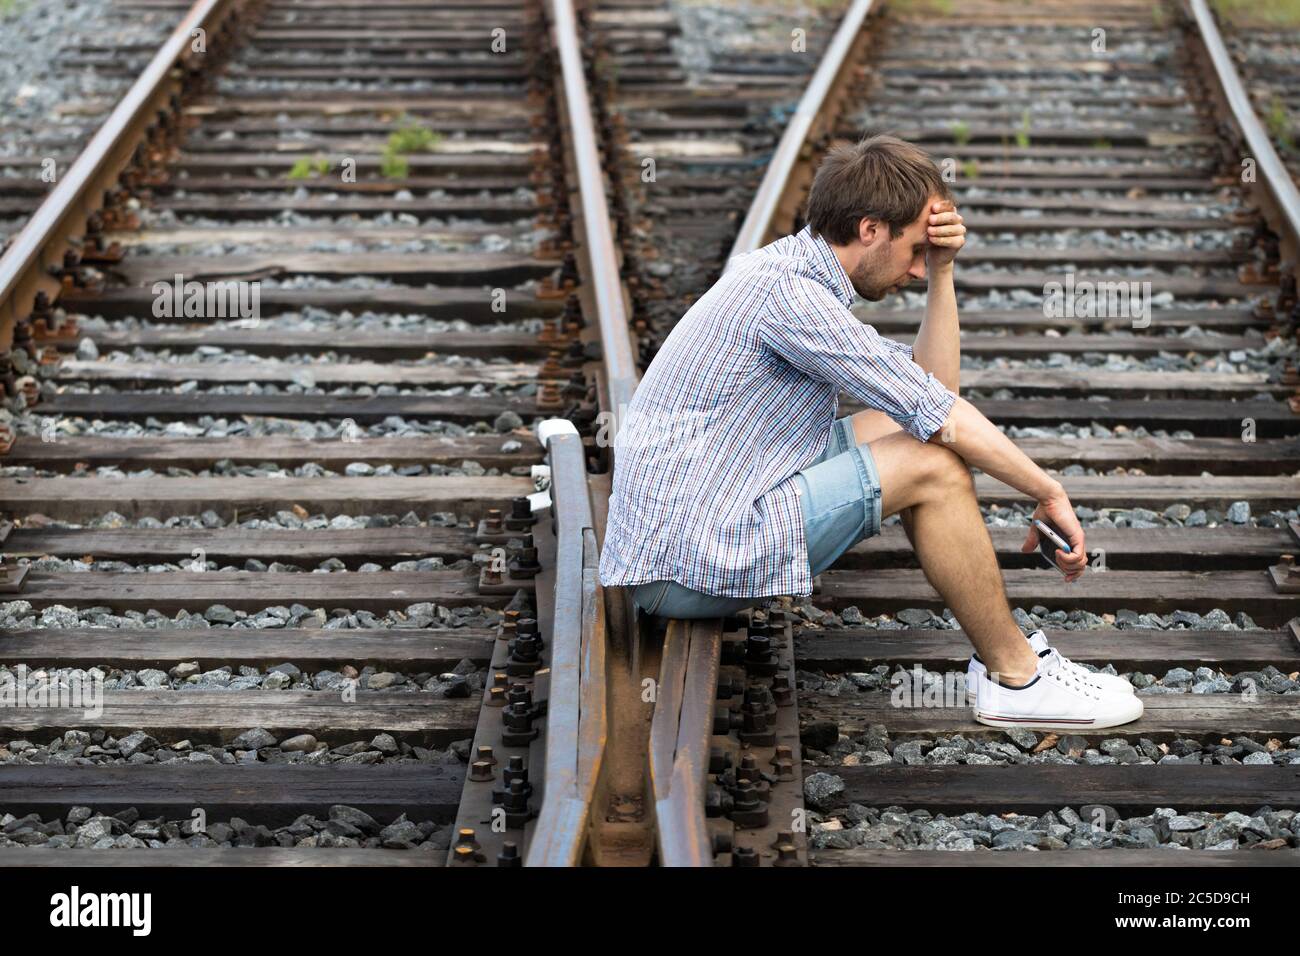 Deprimierter Mann, der auf den Gleisen sitzt, Telefon hält, trifft eine schwierige Entscheidung, in der Vergangenheit zu leben oder seine Zukunft zu ändern. Ändern des Lebenswegs c Stockfoto